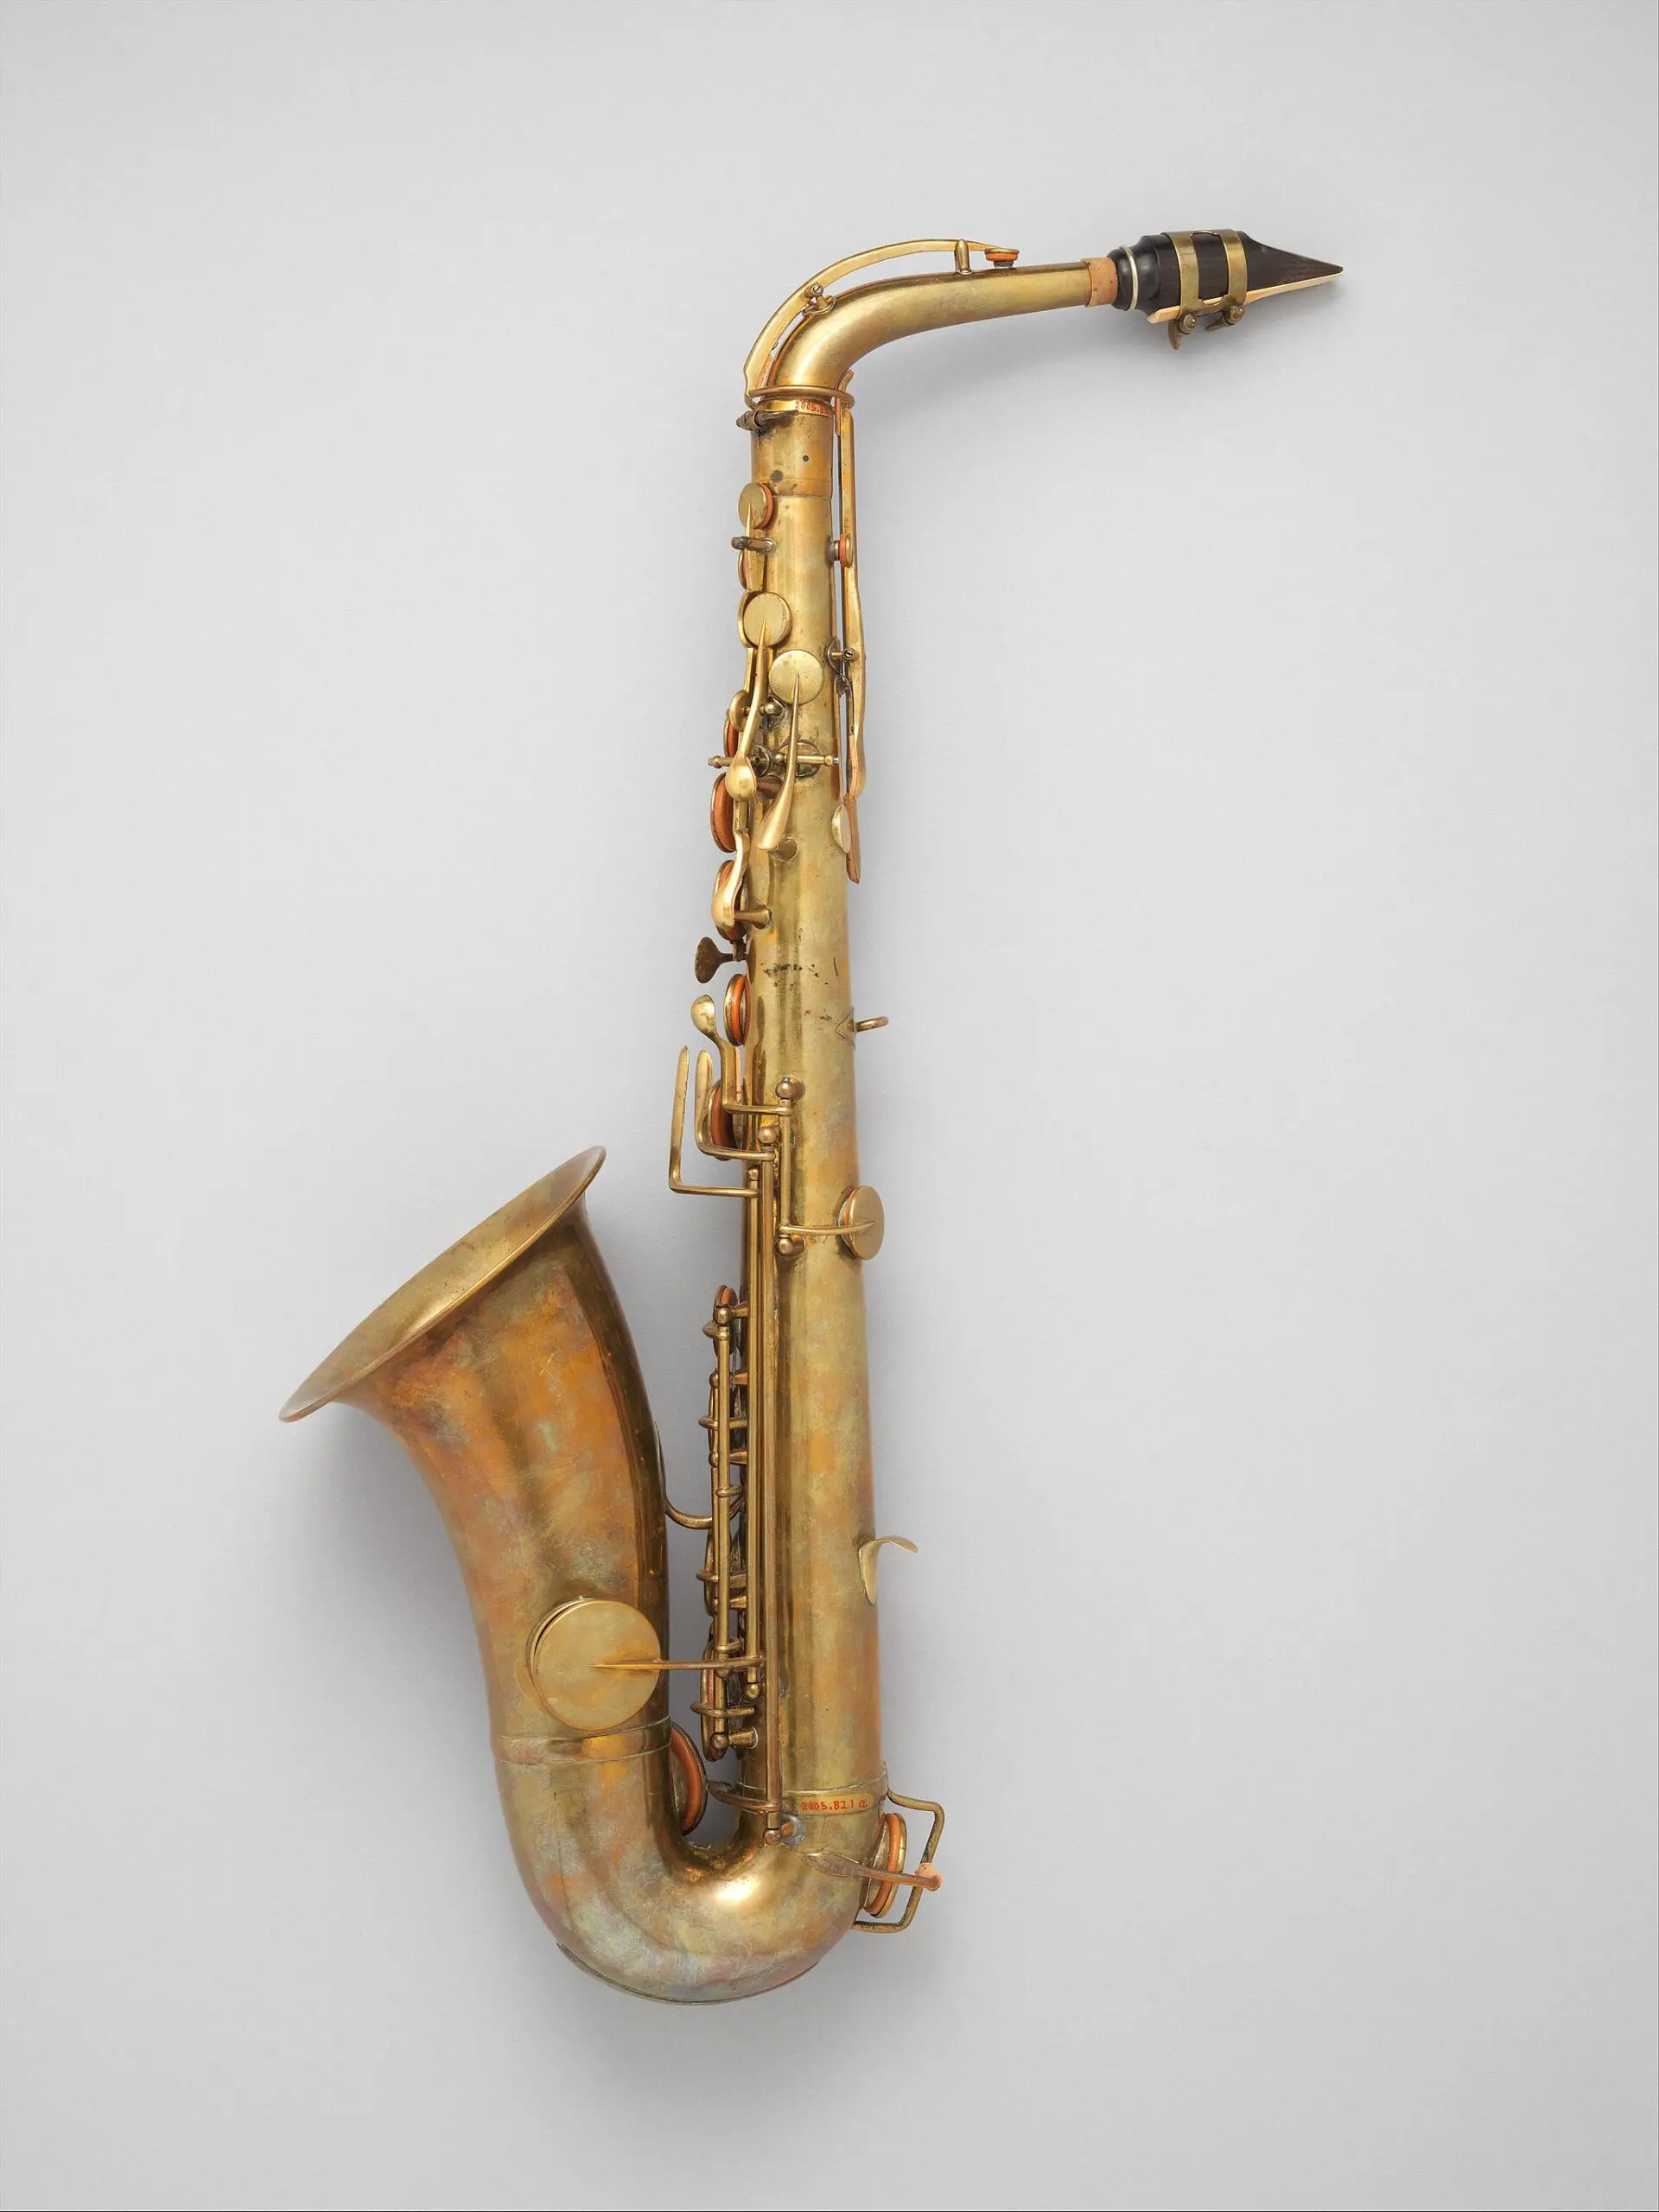 Adolphe Sax: el hombre que engañó a la muerte siete veces antes de inventar el saxofón